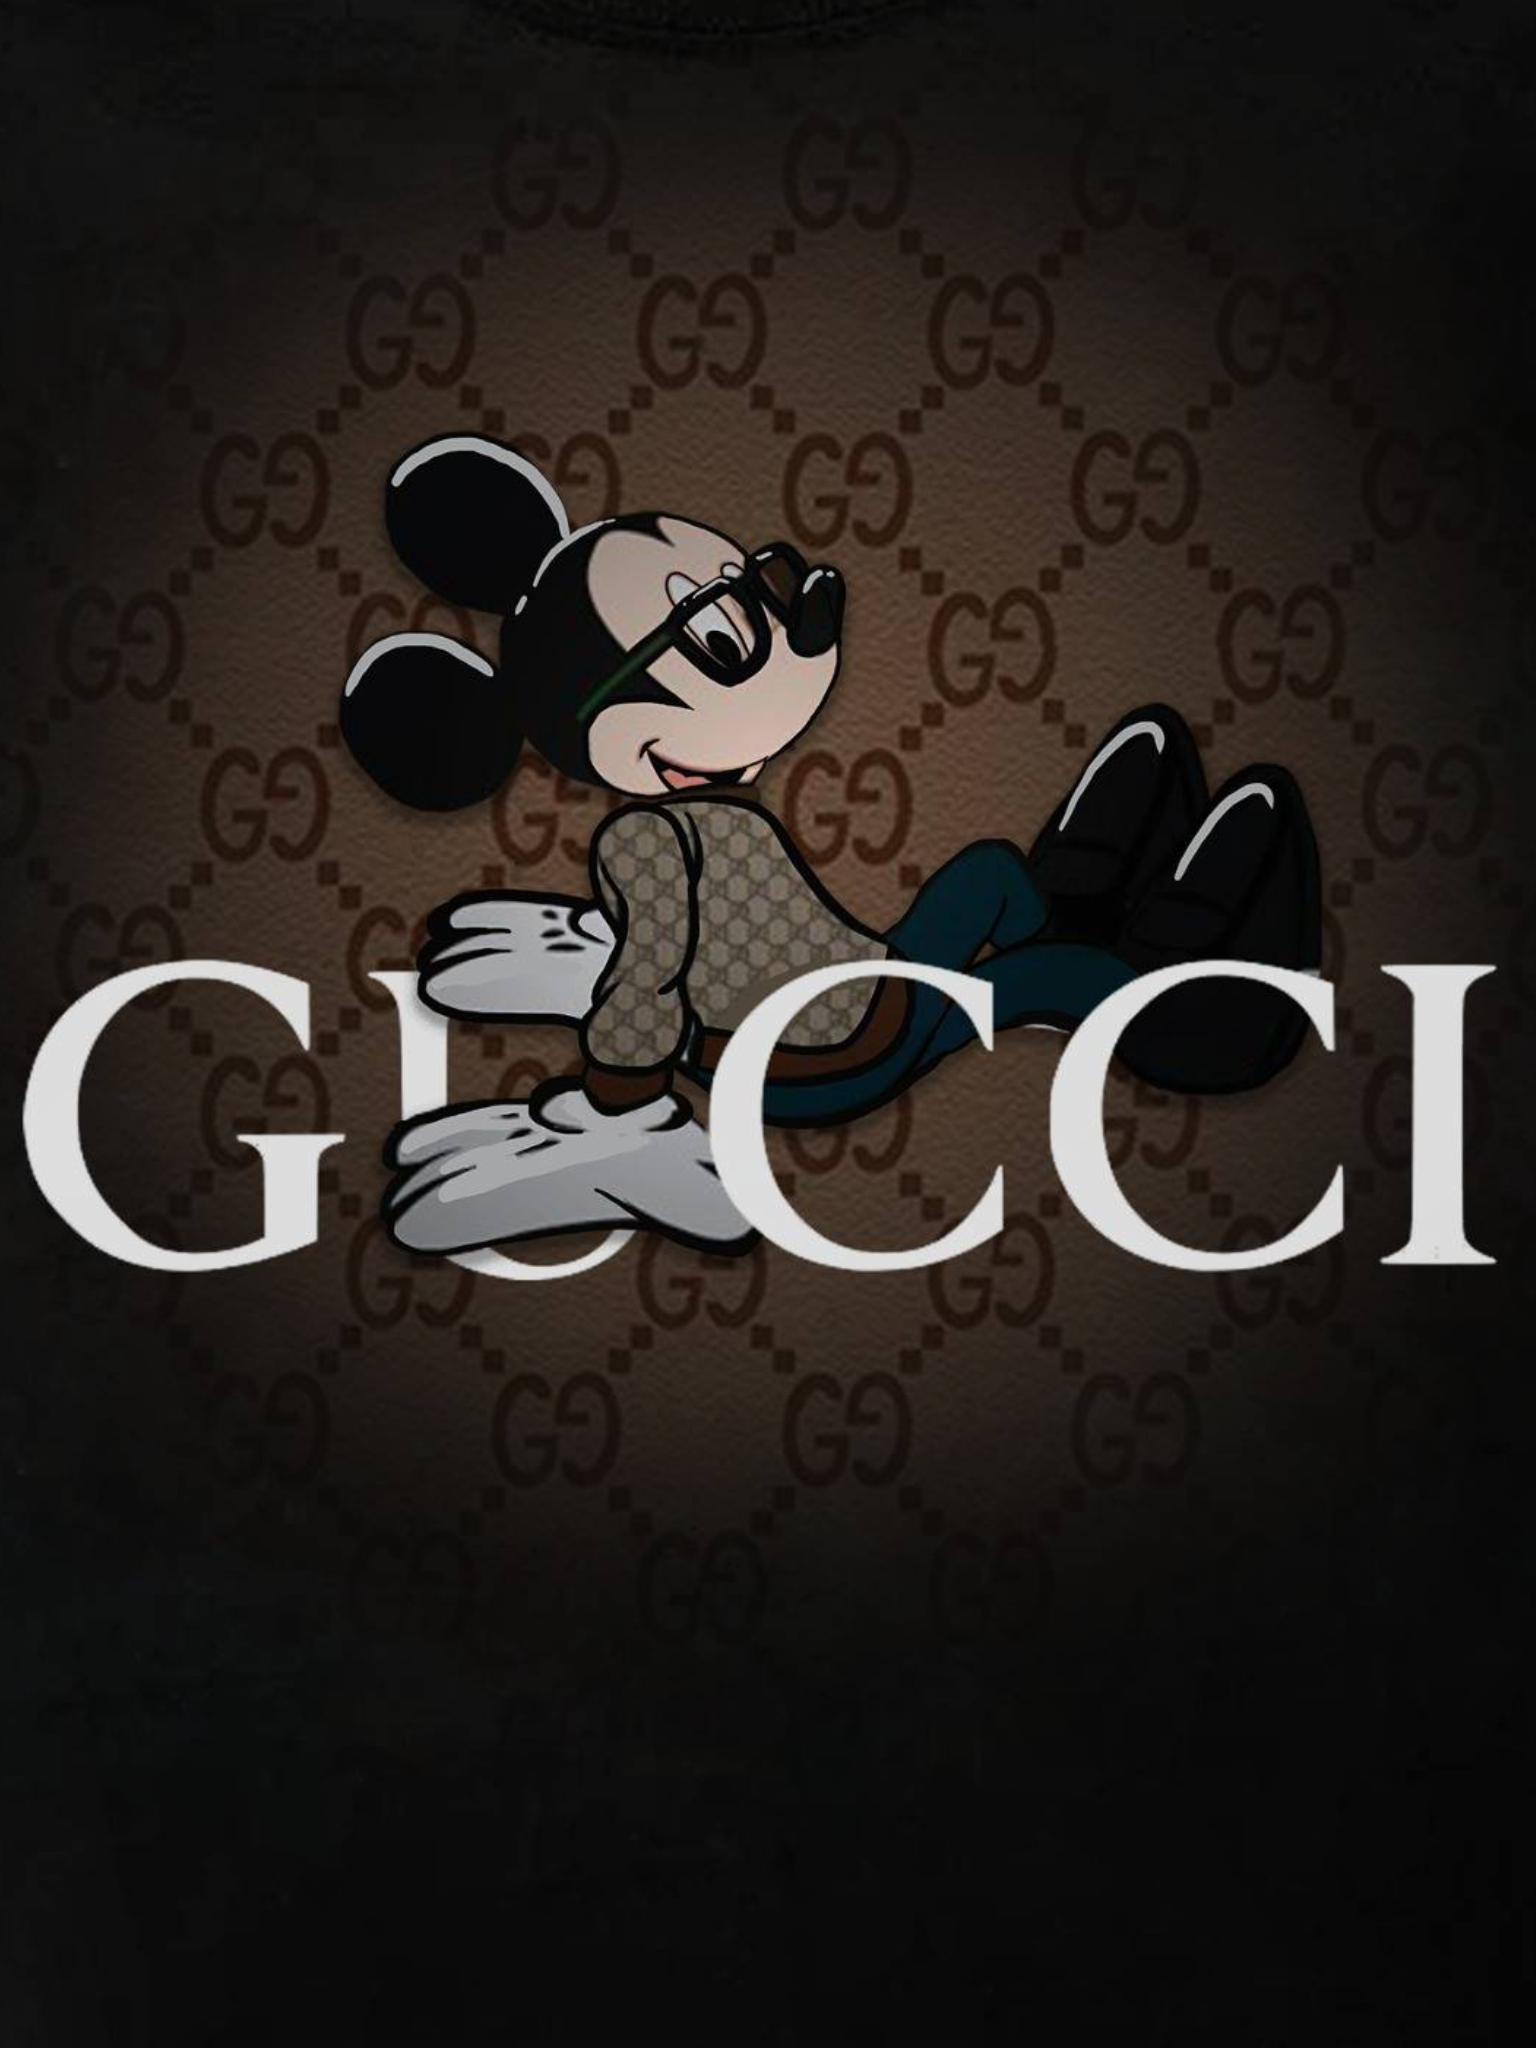 Gucci Mickey Mouse Wallpapers - Top Những Hình Ảnh Đẹp